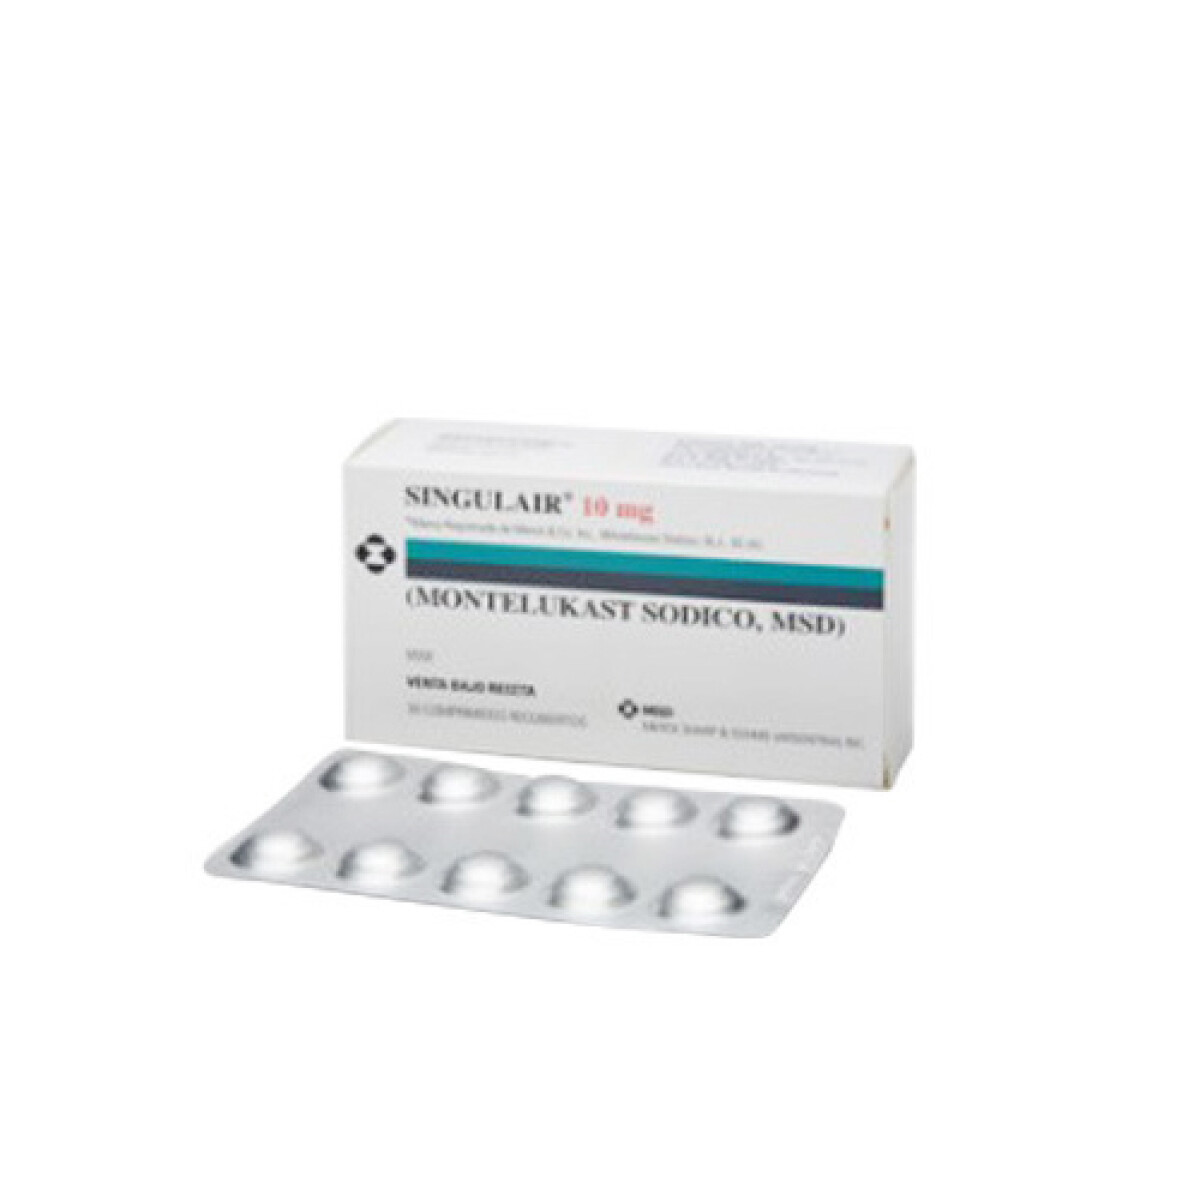 Singulair 10 Mg 30 Comprimidos 2 Cajas 